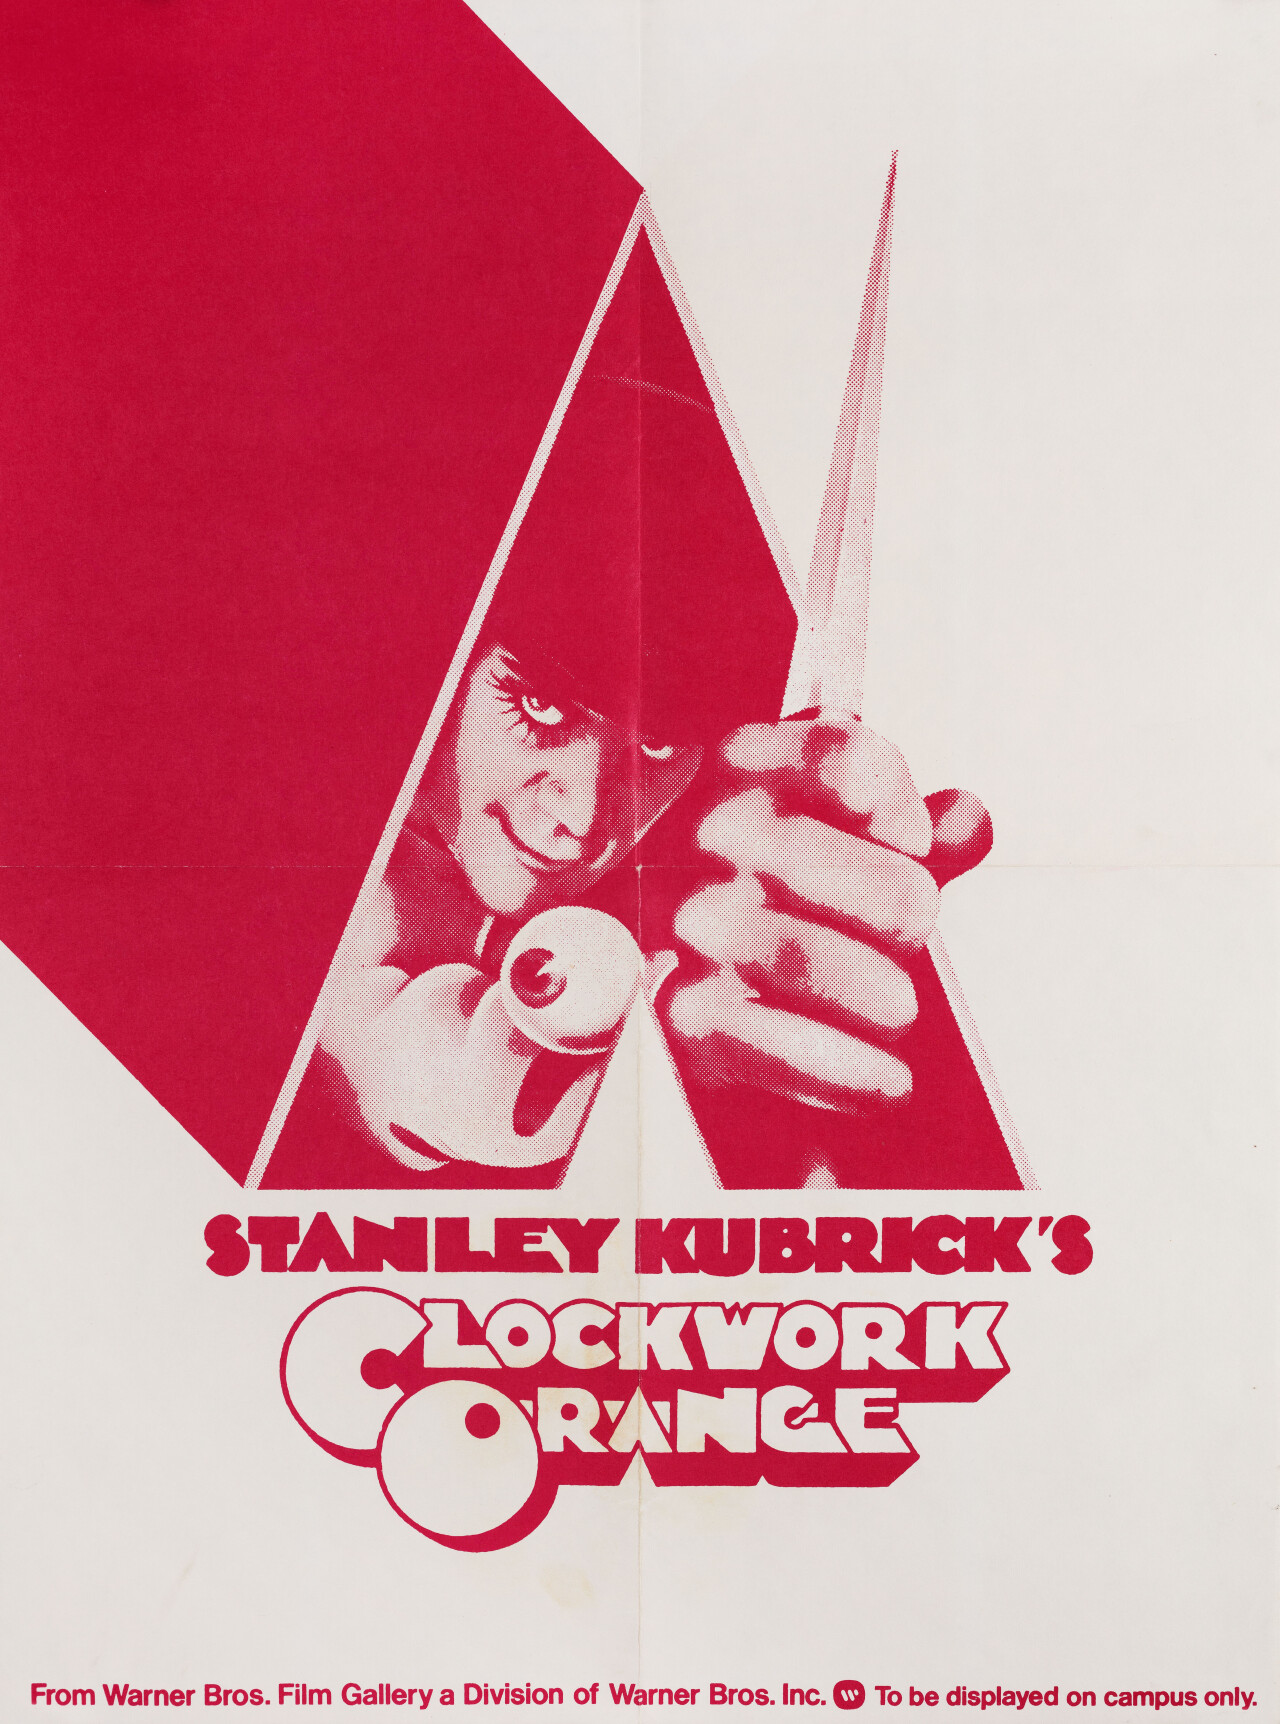 Заводной апельсин (A Clockwork Orange, 1971), режиссёр Стэнли Кубрик, американский постер к фильму (графический дизайн, 1972 год)